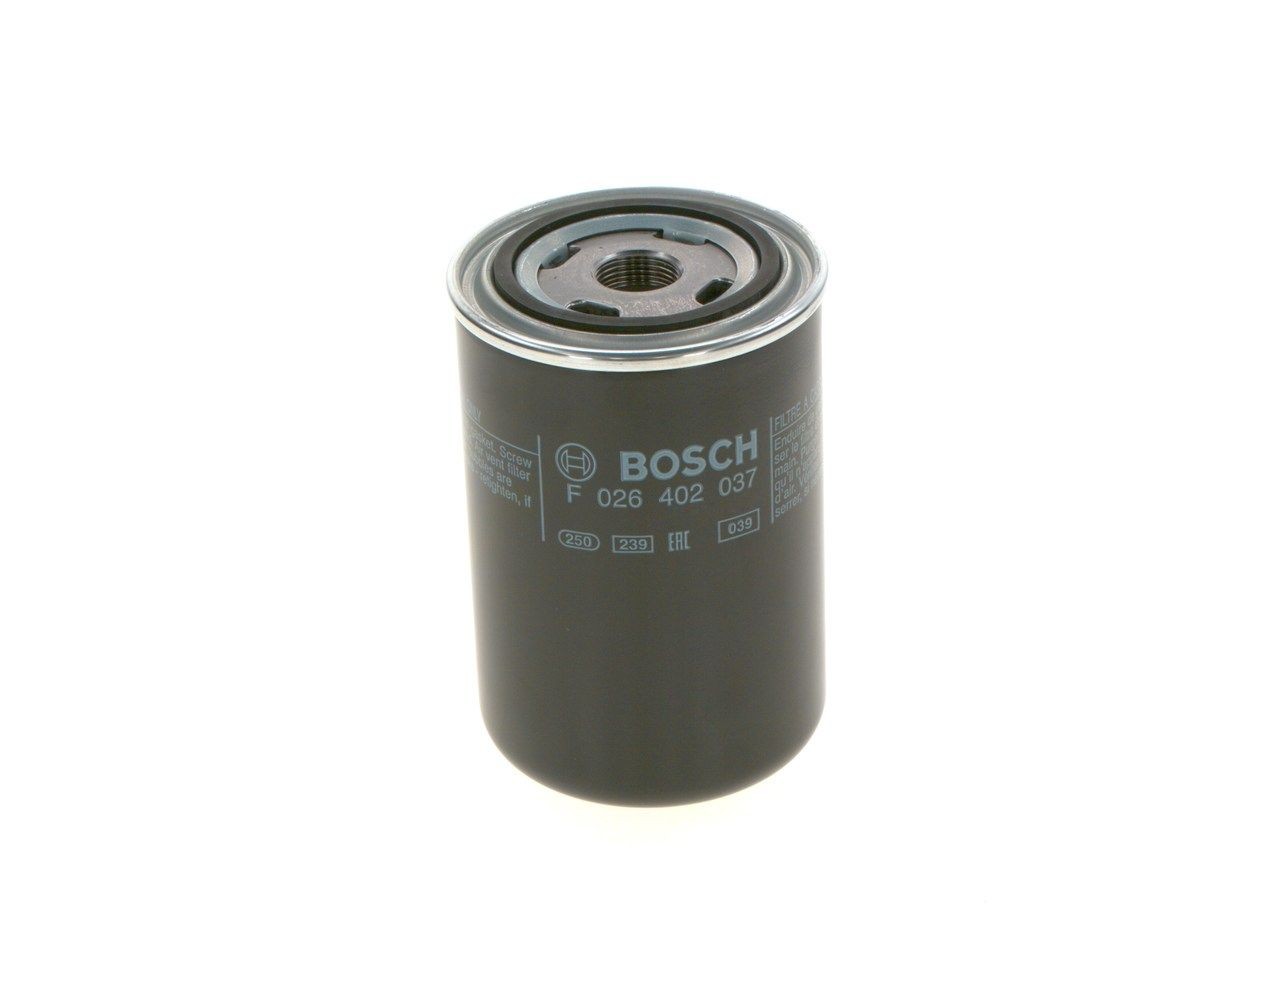 BOSCH Fuel filter F 026 402 037